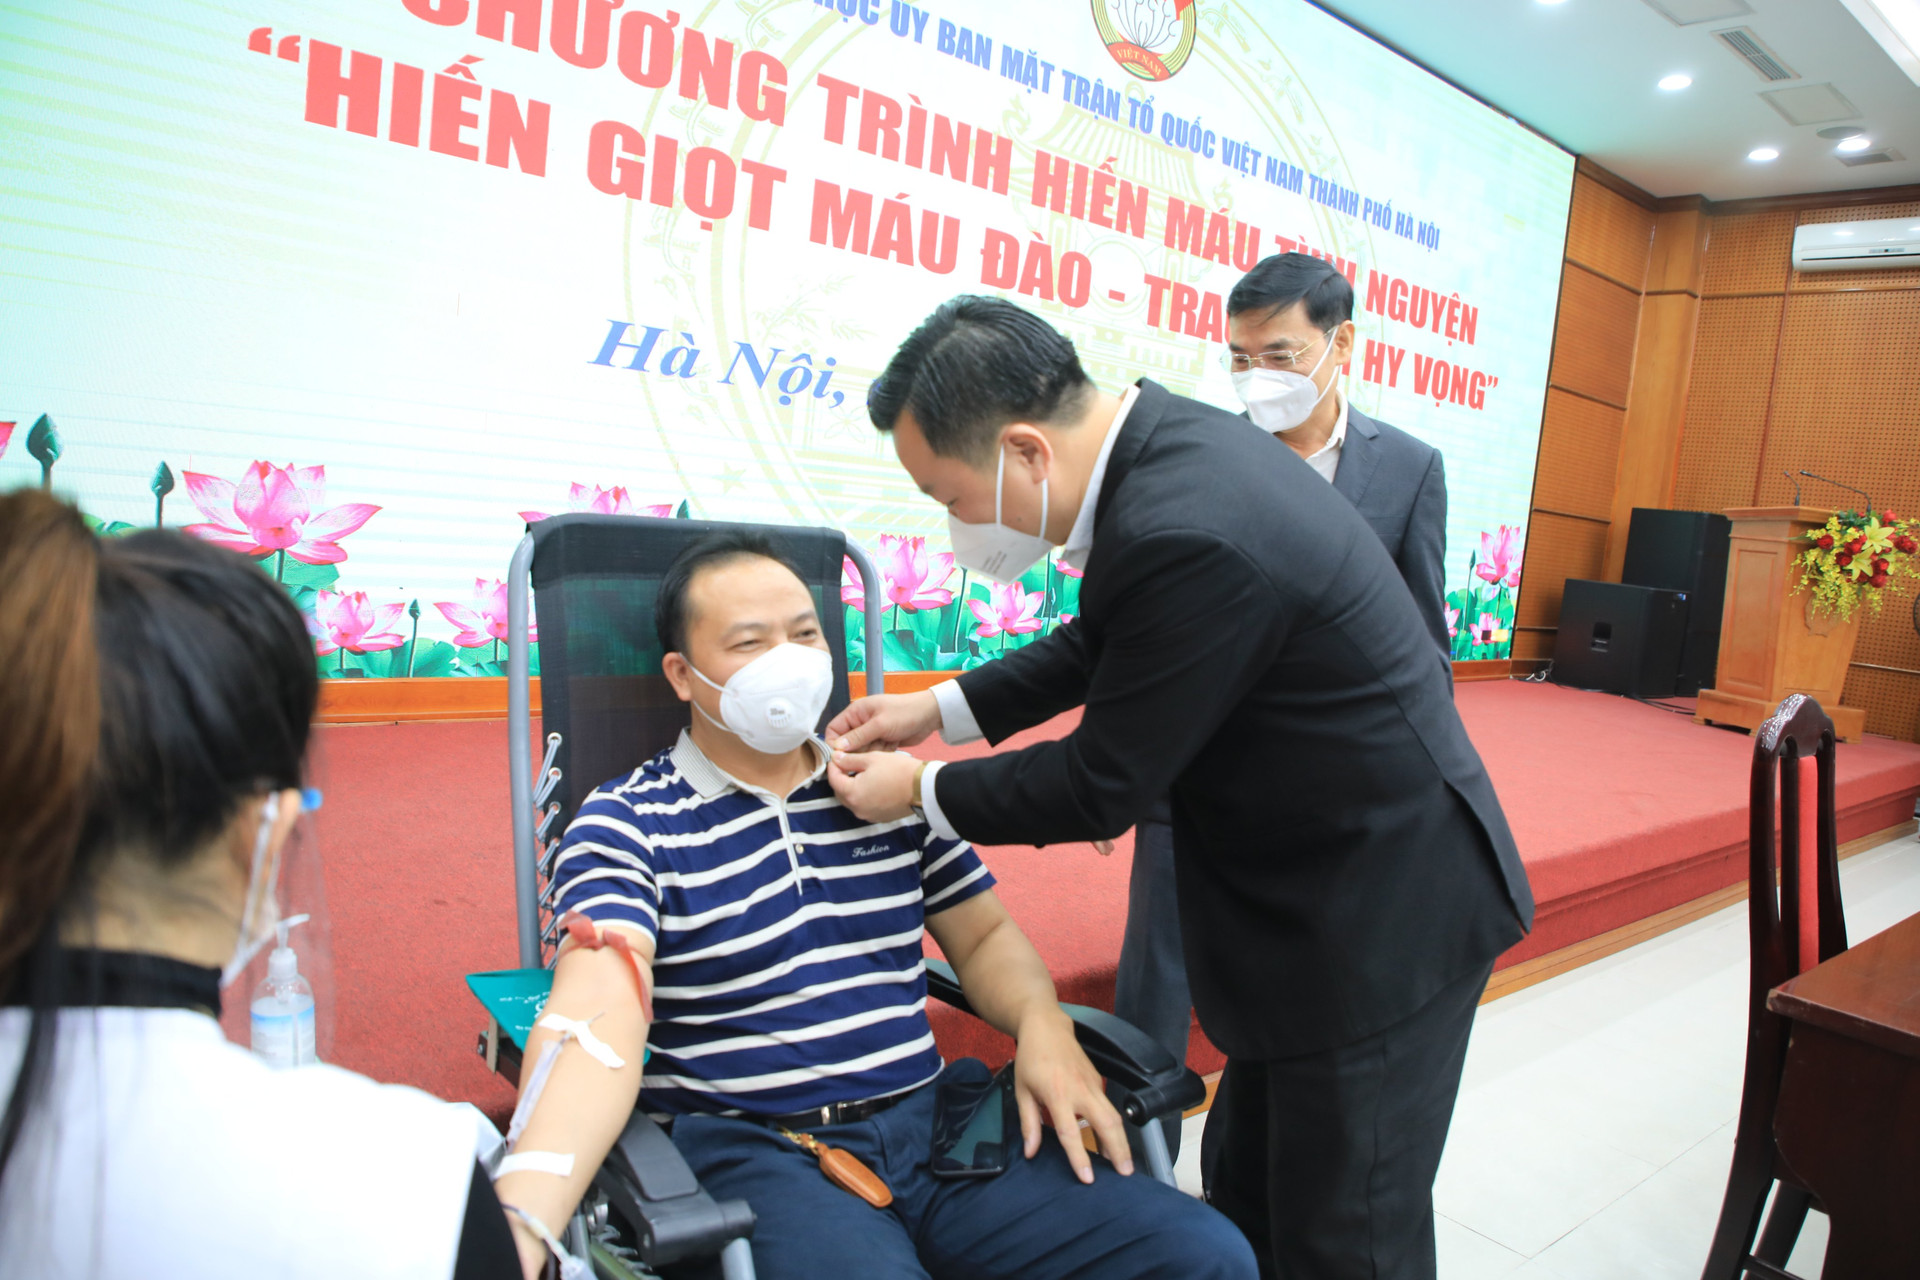 Phó Chủ tịch Ủy ban MTTQ thành phố Nguyễn Sỹ Trường quan tâm, thăm hỏi người tham gia hiến máu.